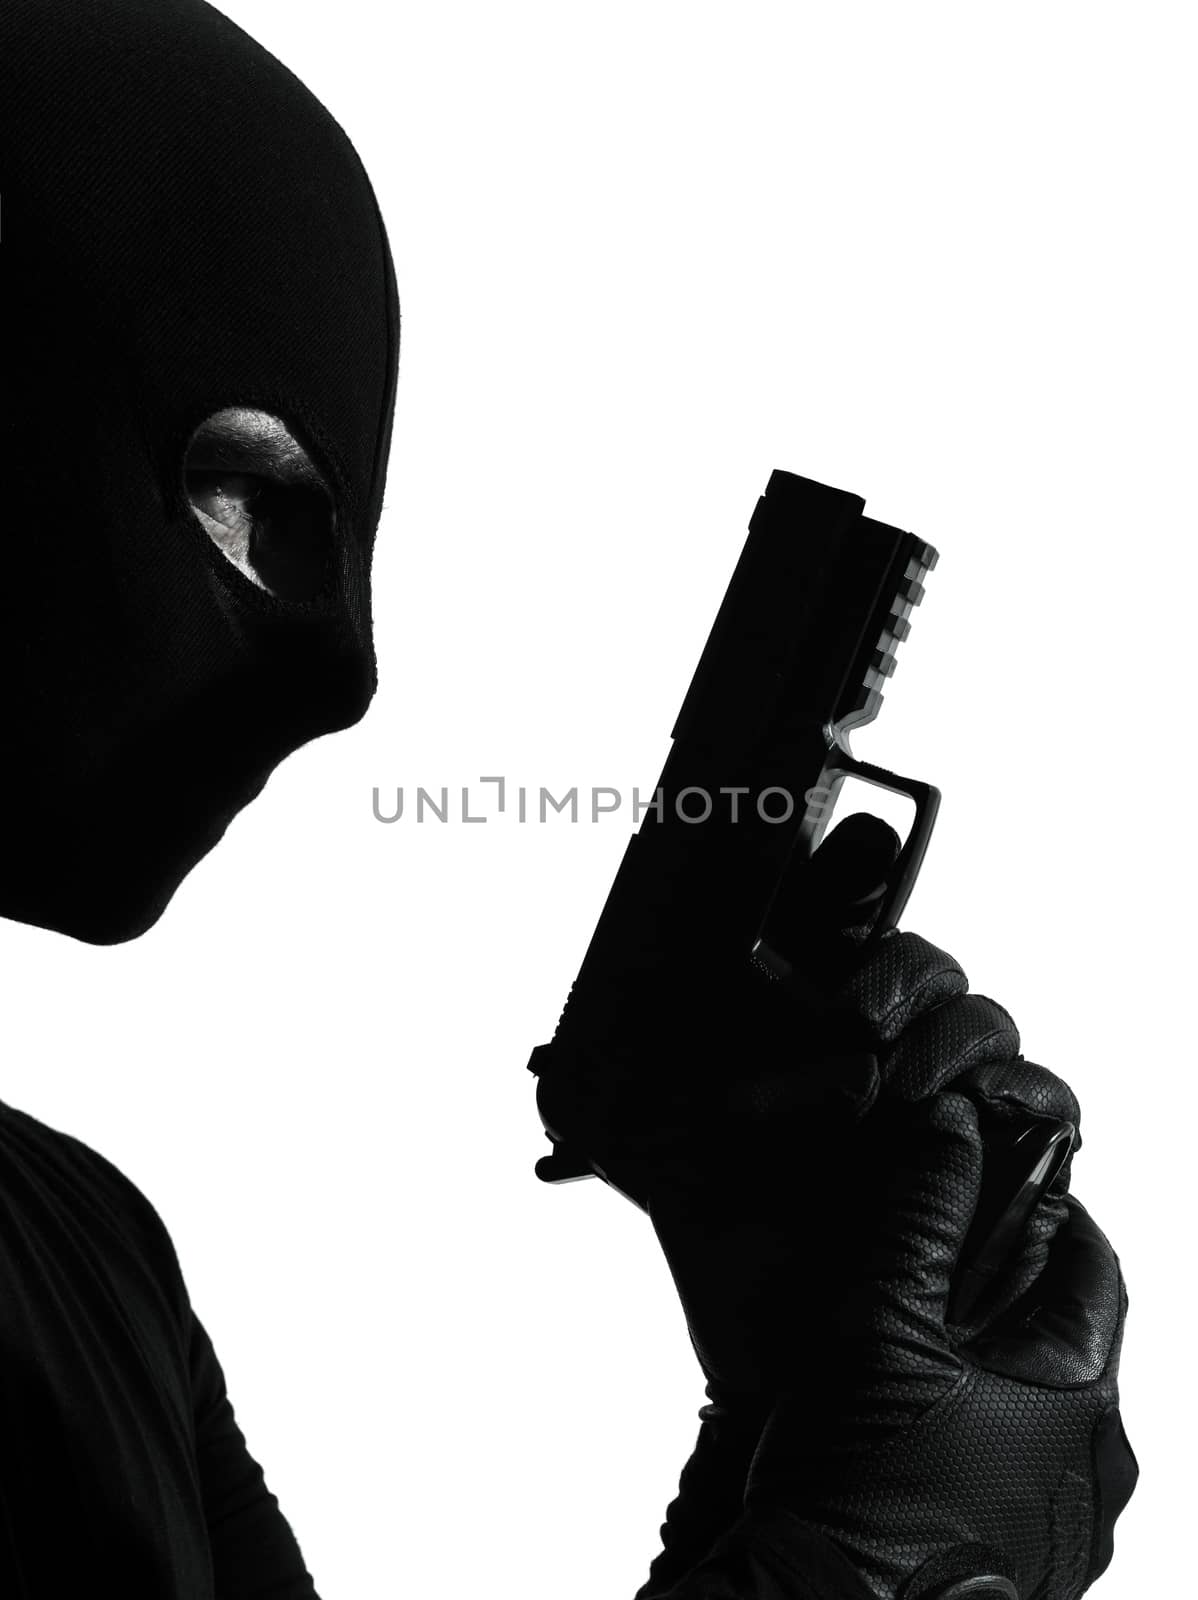 thief criminal terrorist holding gun portrait by PIXSTILL